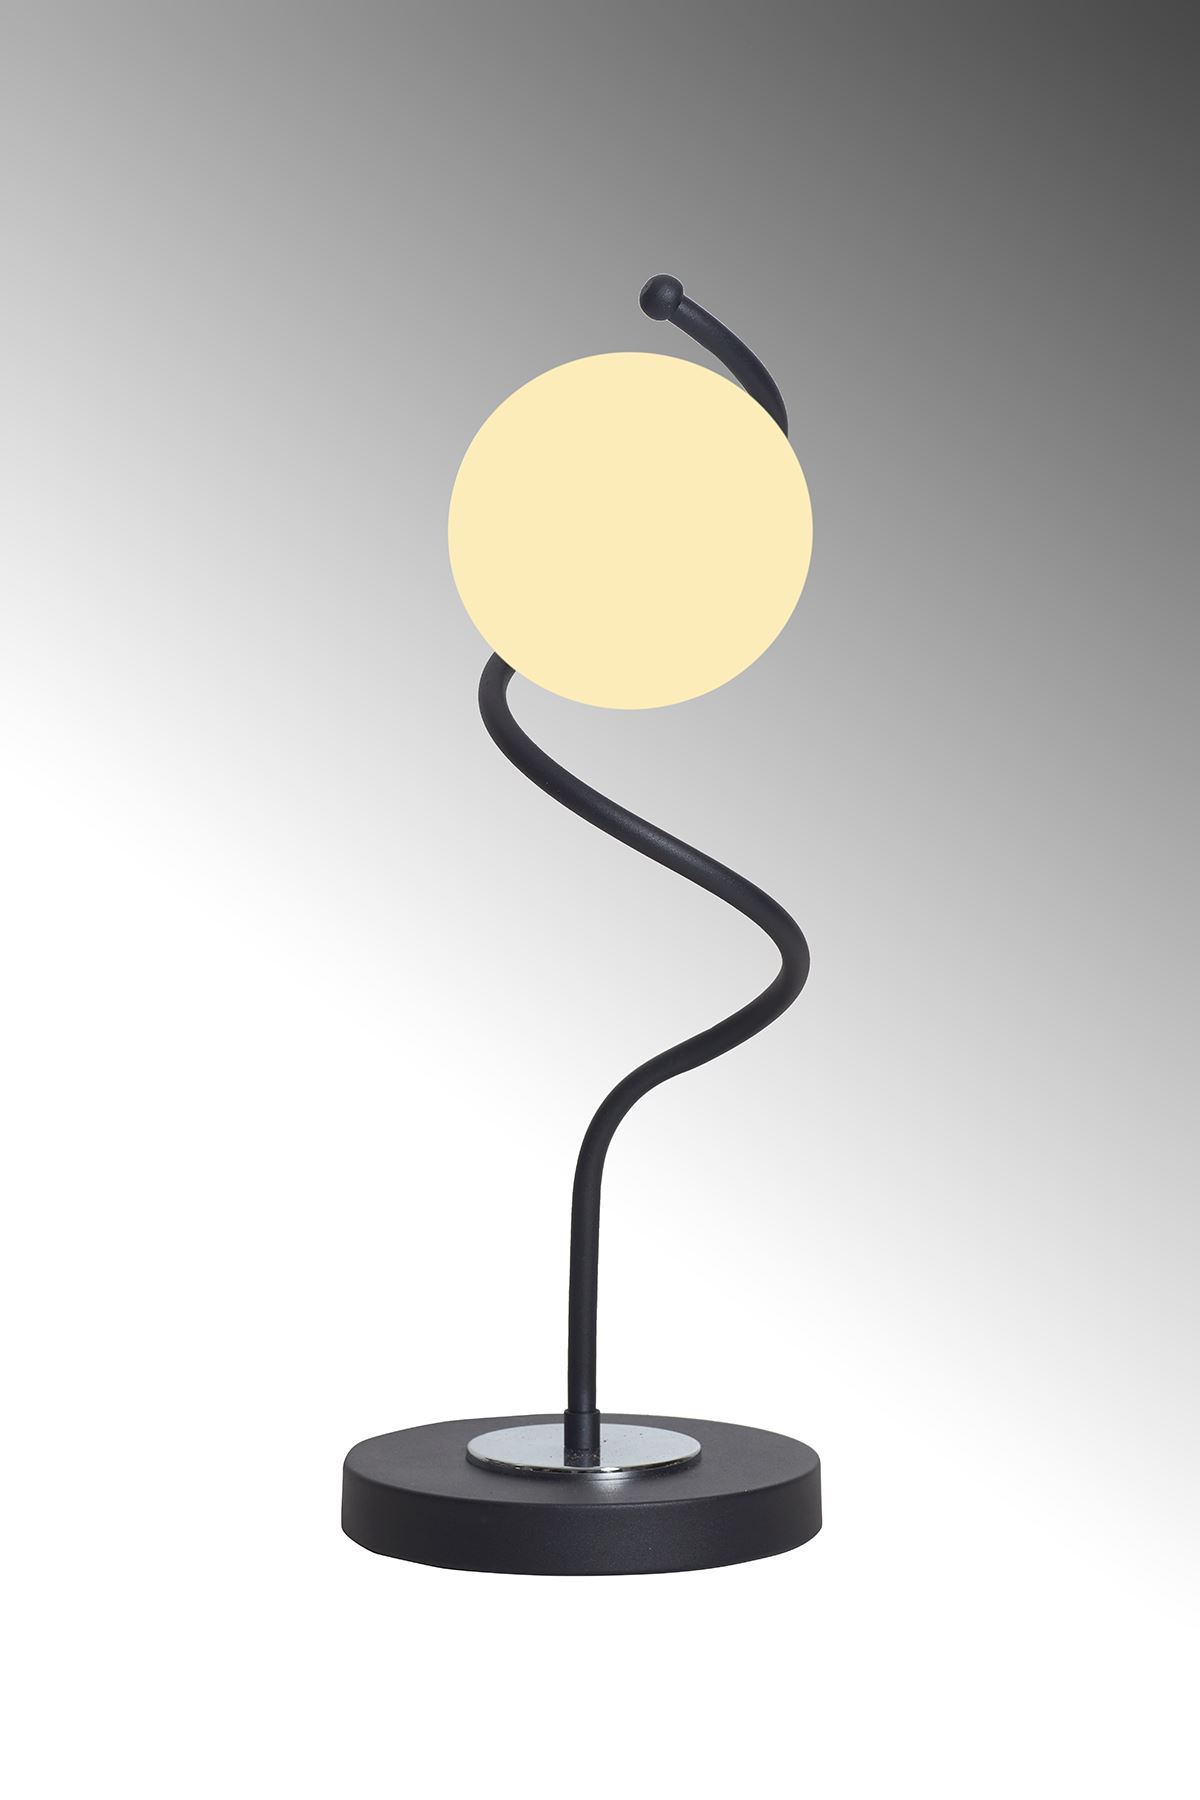 Nora Siyah-Krom Metal Gövde Beyaz Camlı Tasarım Lüx Masa Lambası